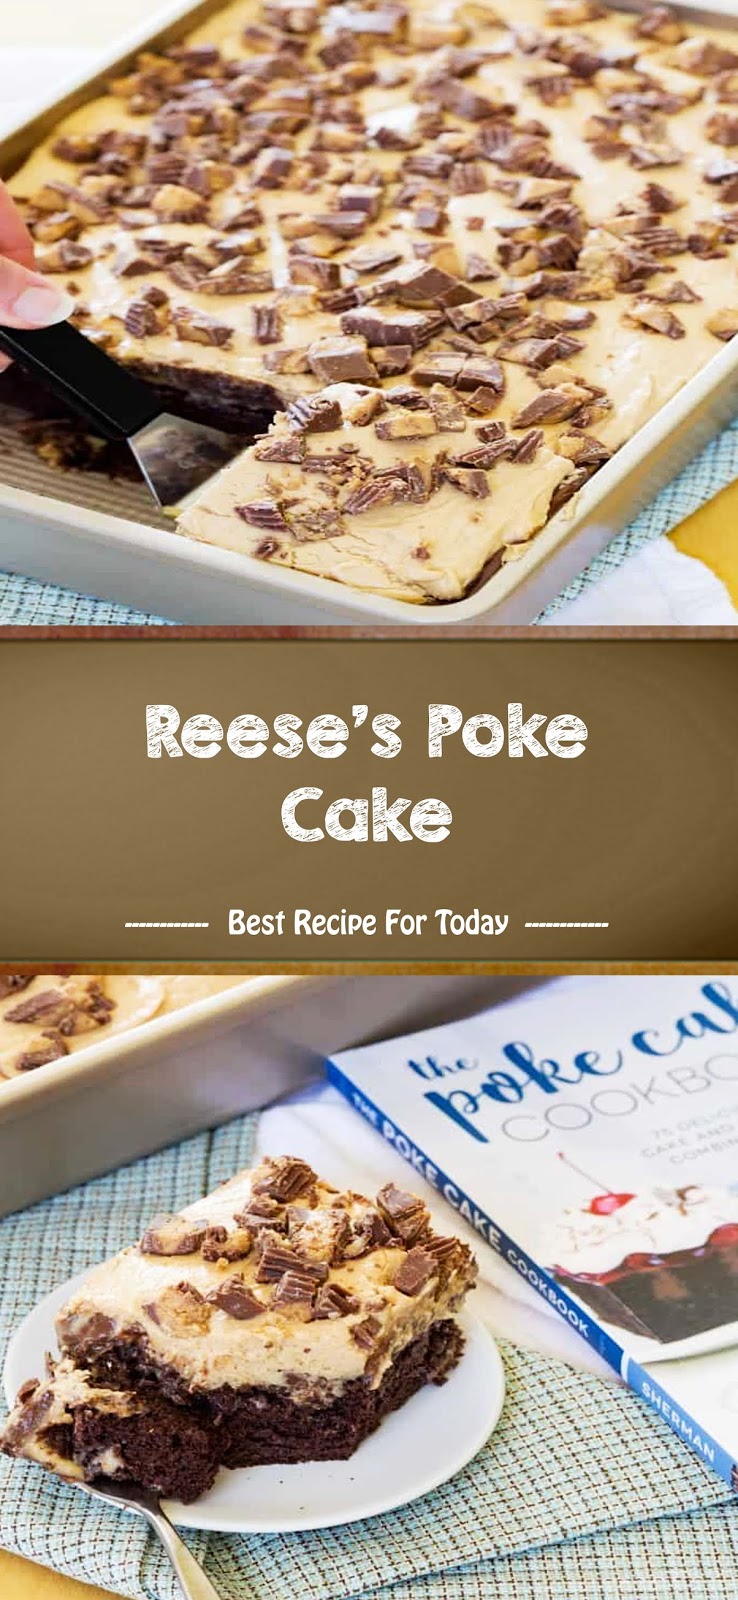 Reese's Poke Cake